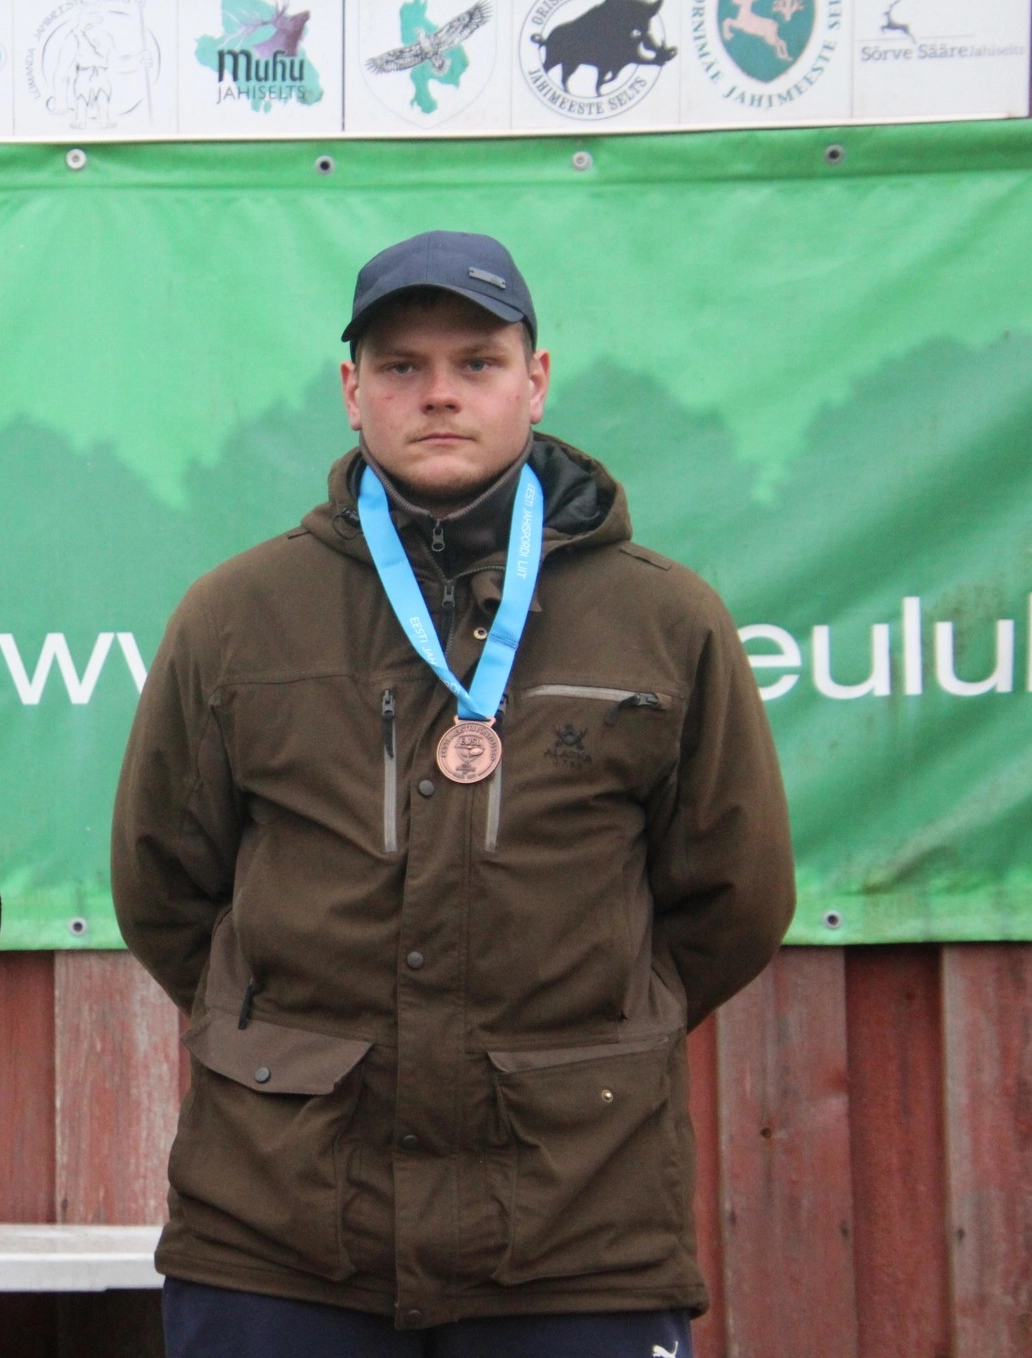 Peeter Jürisson saavutas olümpia kvalifikatsioonivõistluse finaalis 2. koha ja kvalifitseerus Pariisi olümpiamängudele. Kataris, Dohas toimunud haavlilaskmise I